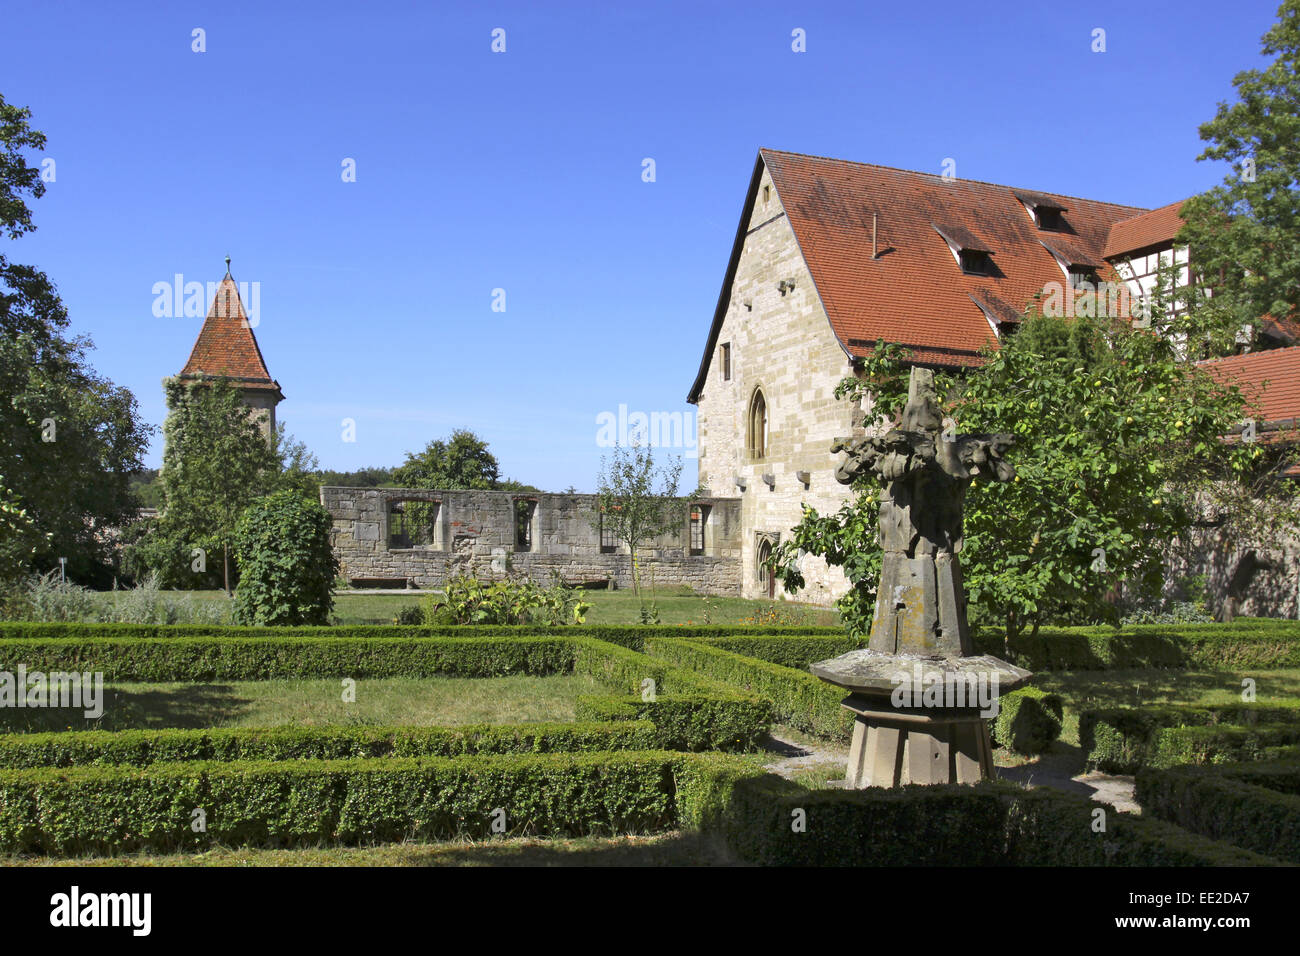 Deutschland, Bayern, Rothenburg ob der Tauber, Klostergarten, Heilkraeutergarten Stock Photo